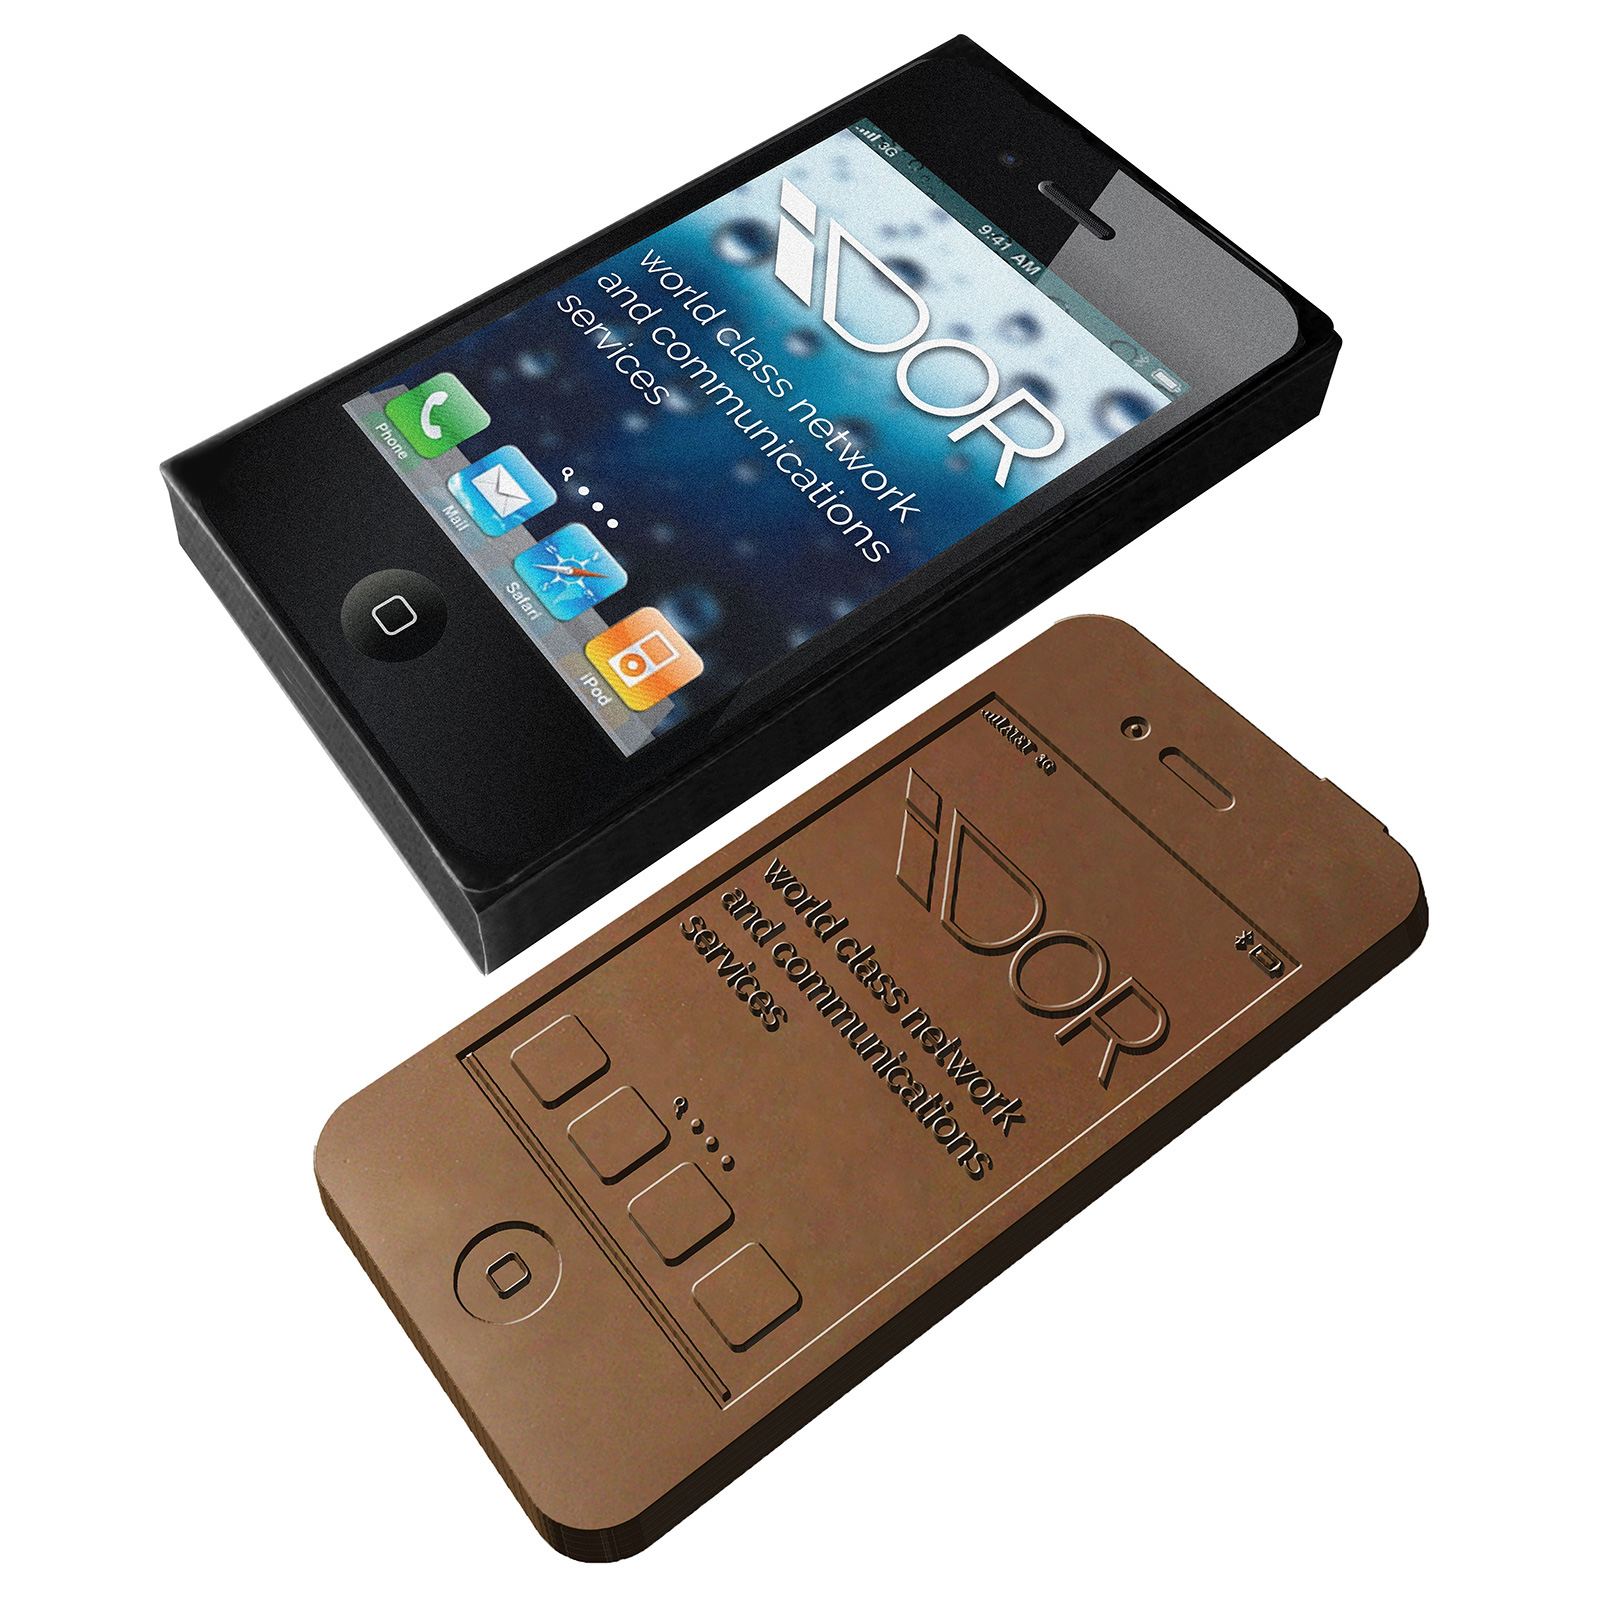 Boîte de Chocolat Smartphone Imprimée en Couleur Intégrale - Novalaise - Zaprinta France